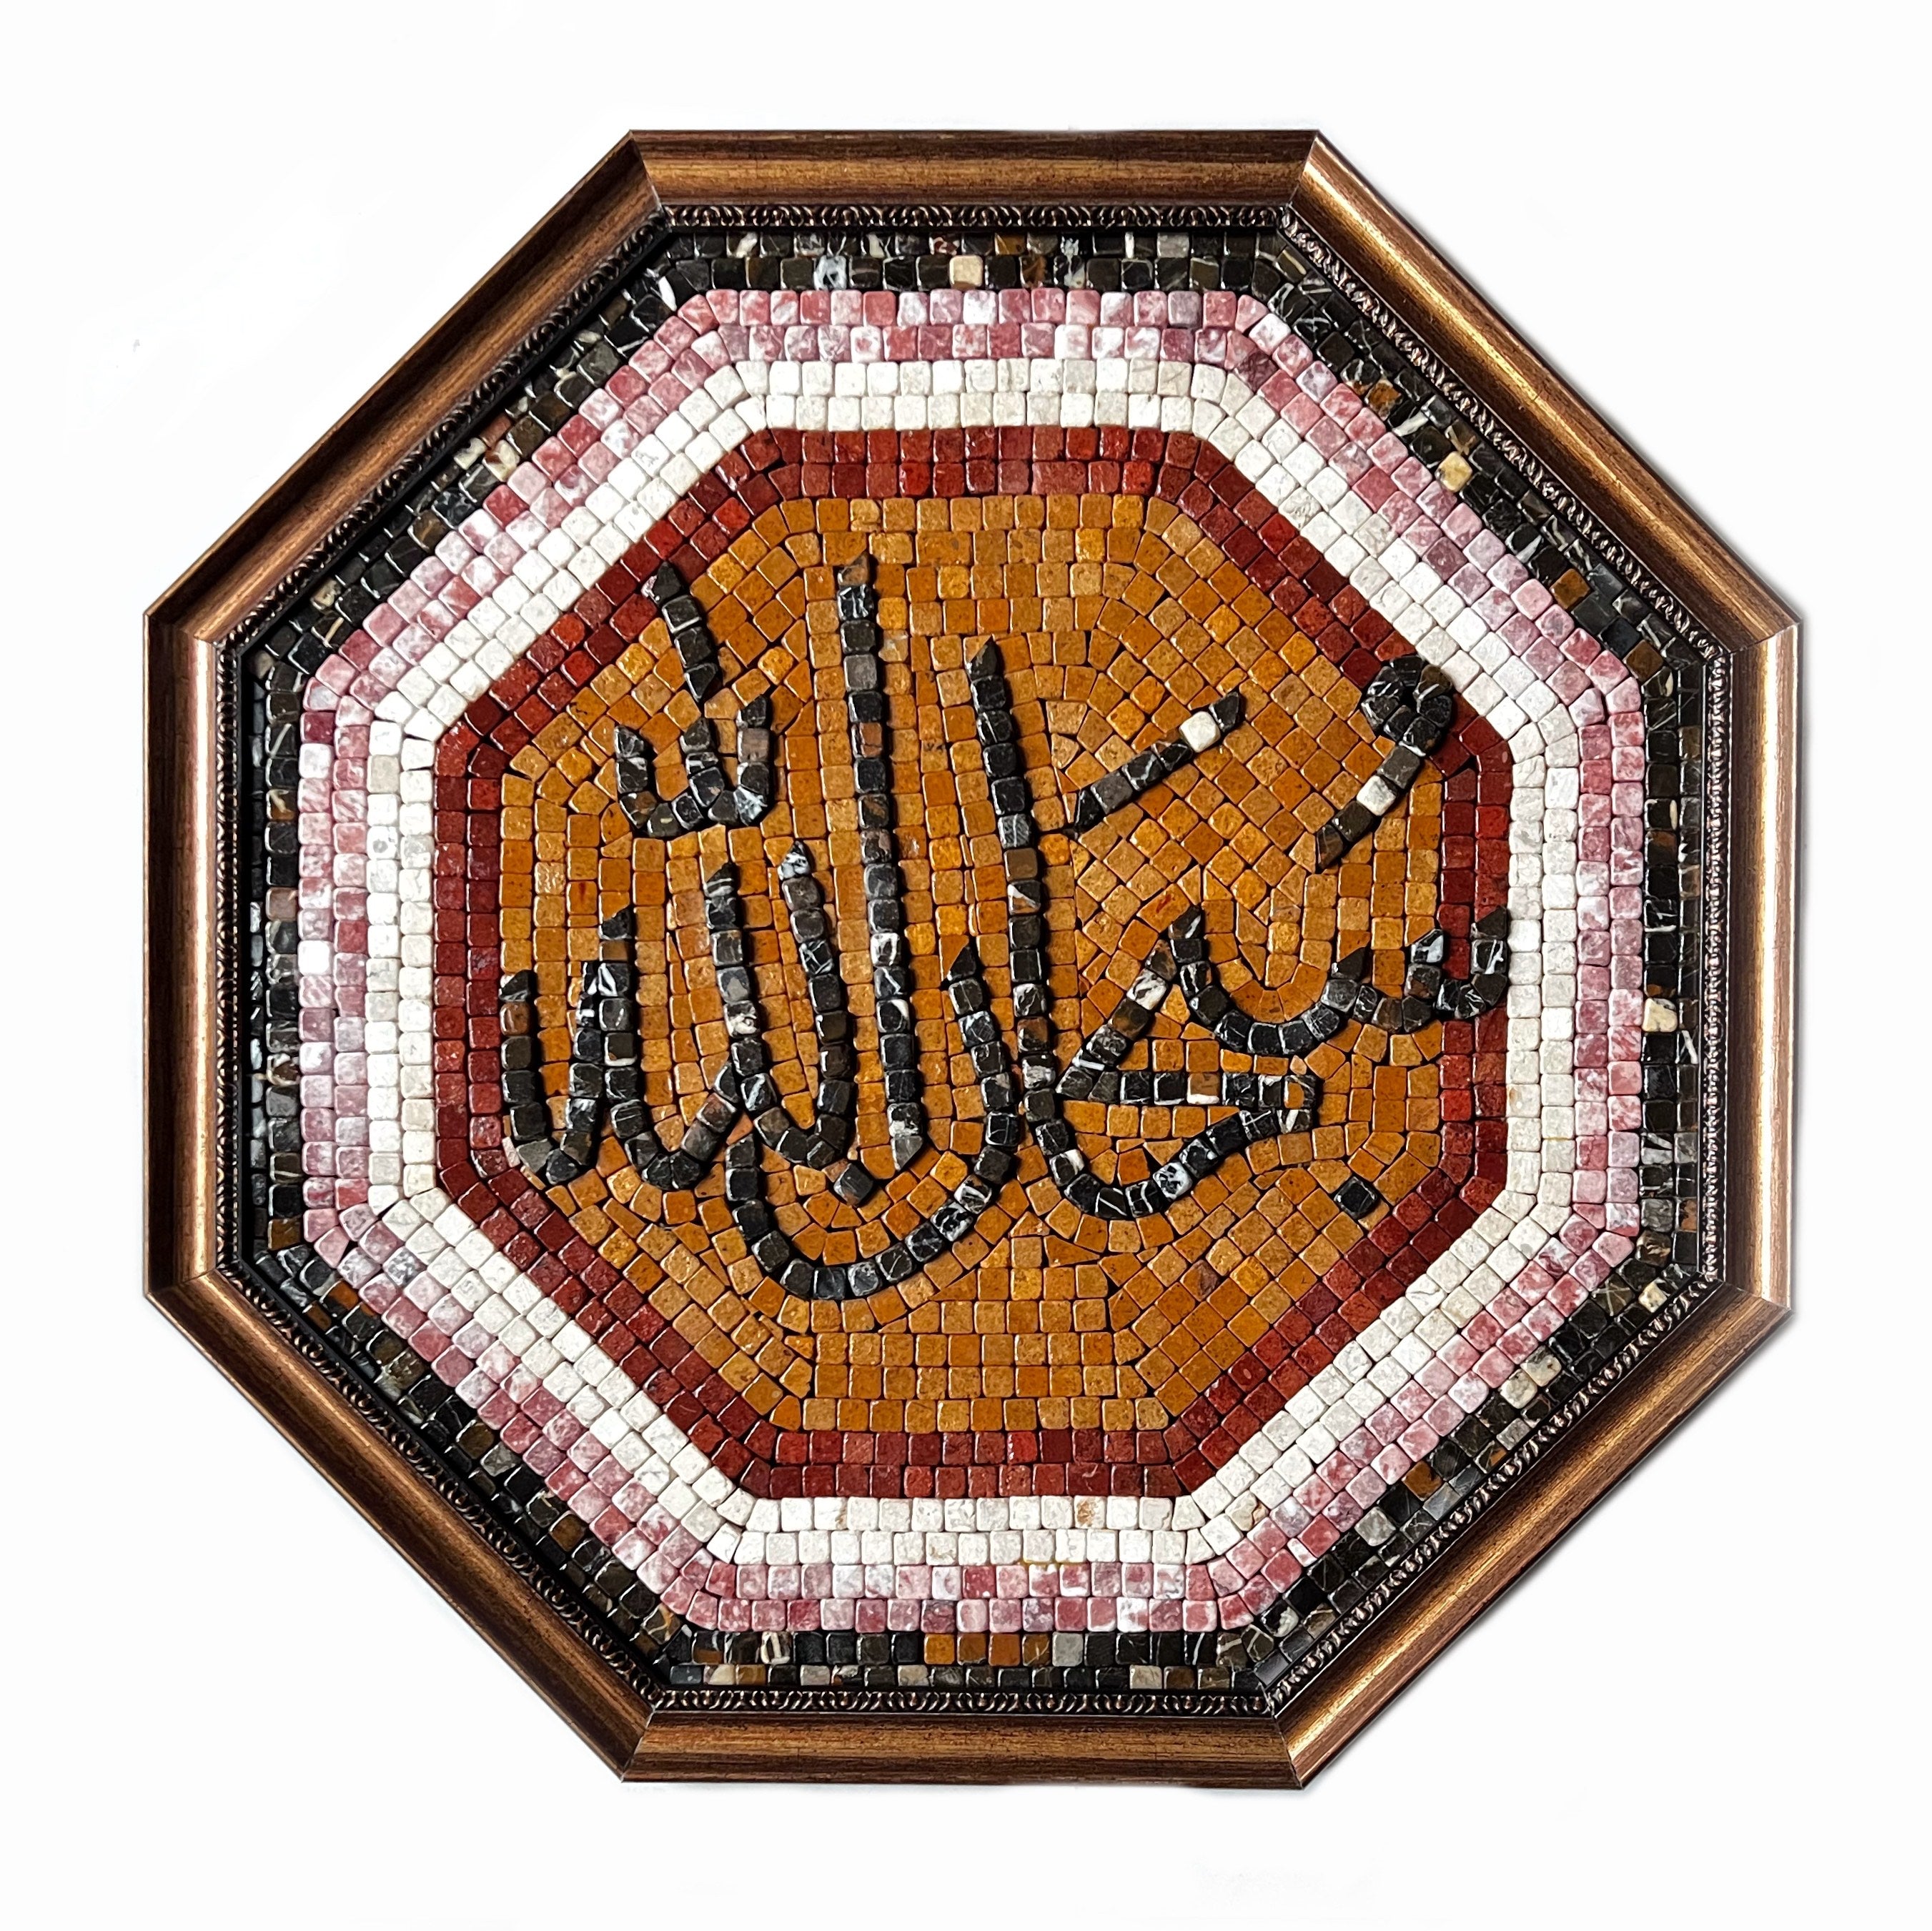 SUBHANALLAH - Mosaic By Qureshi's